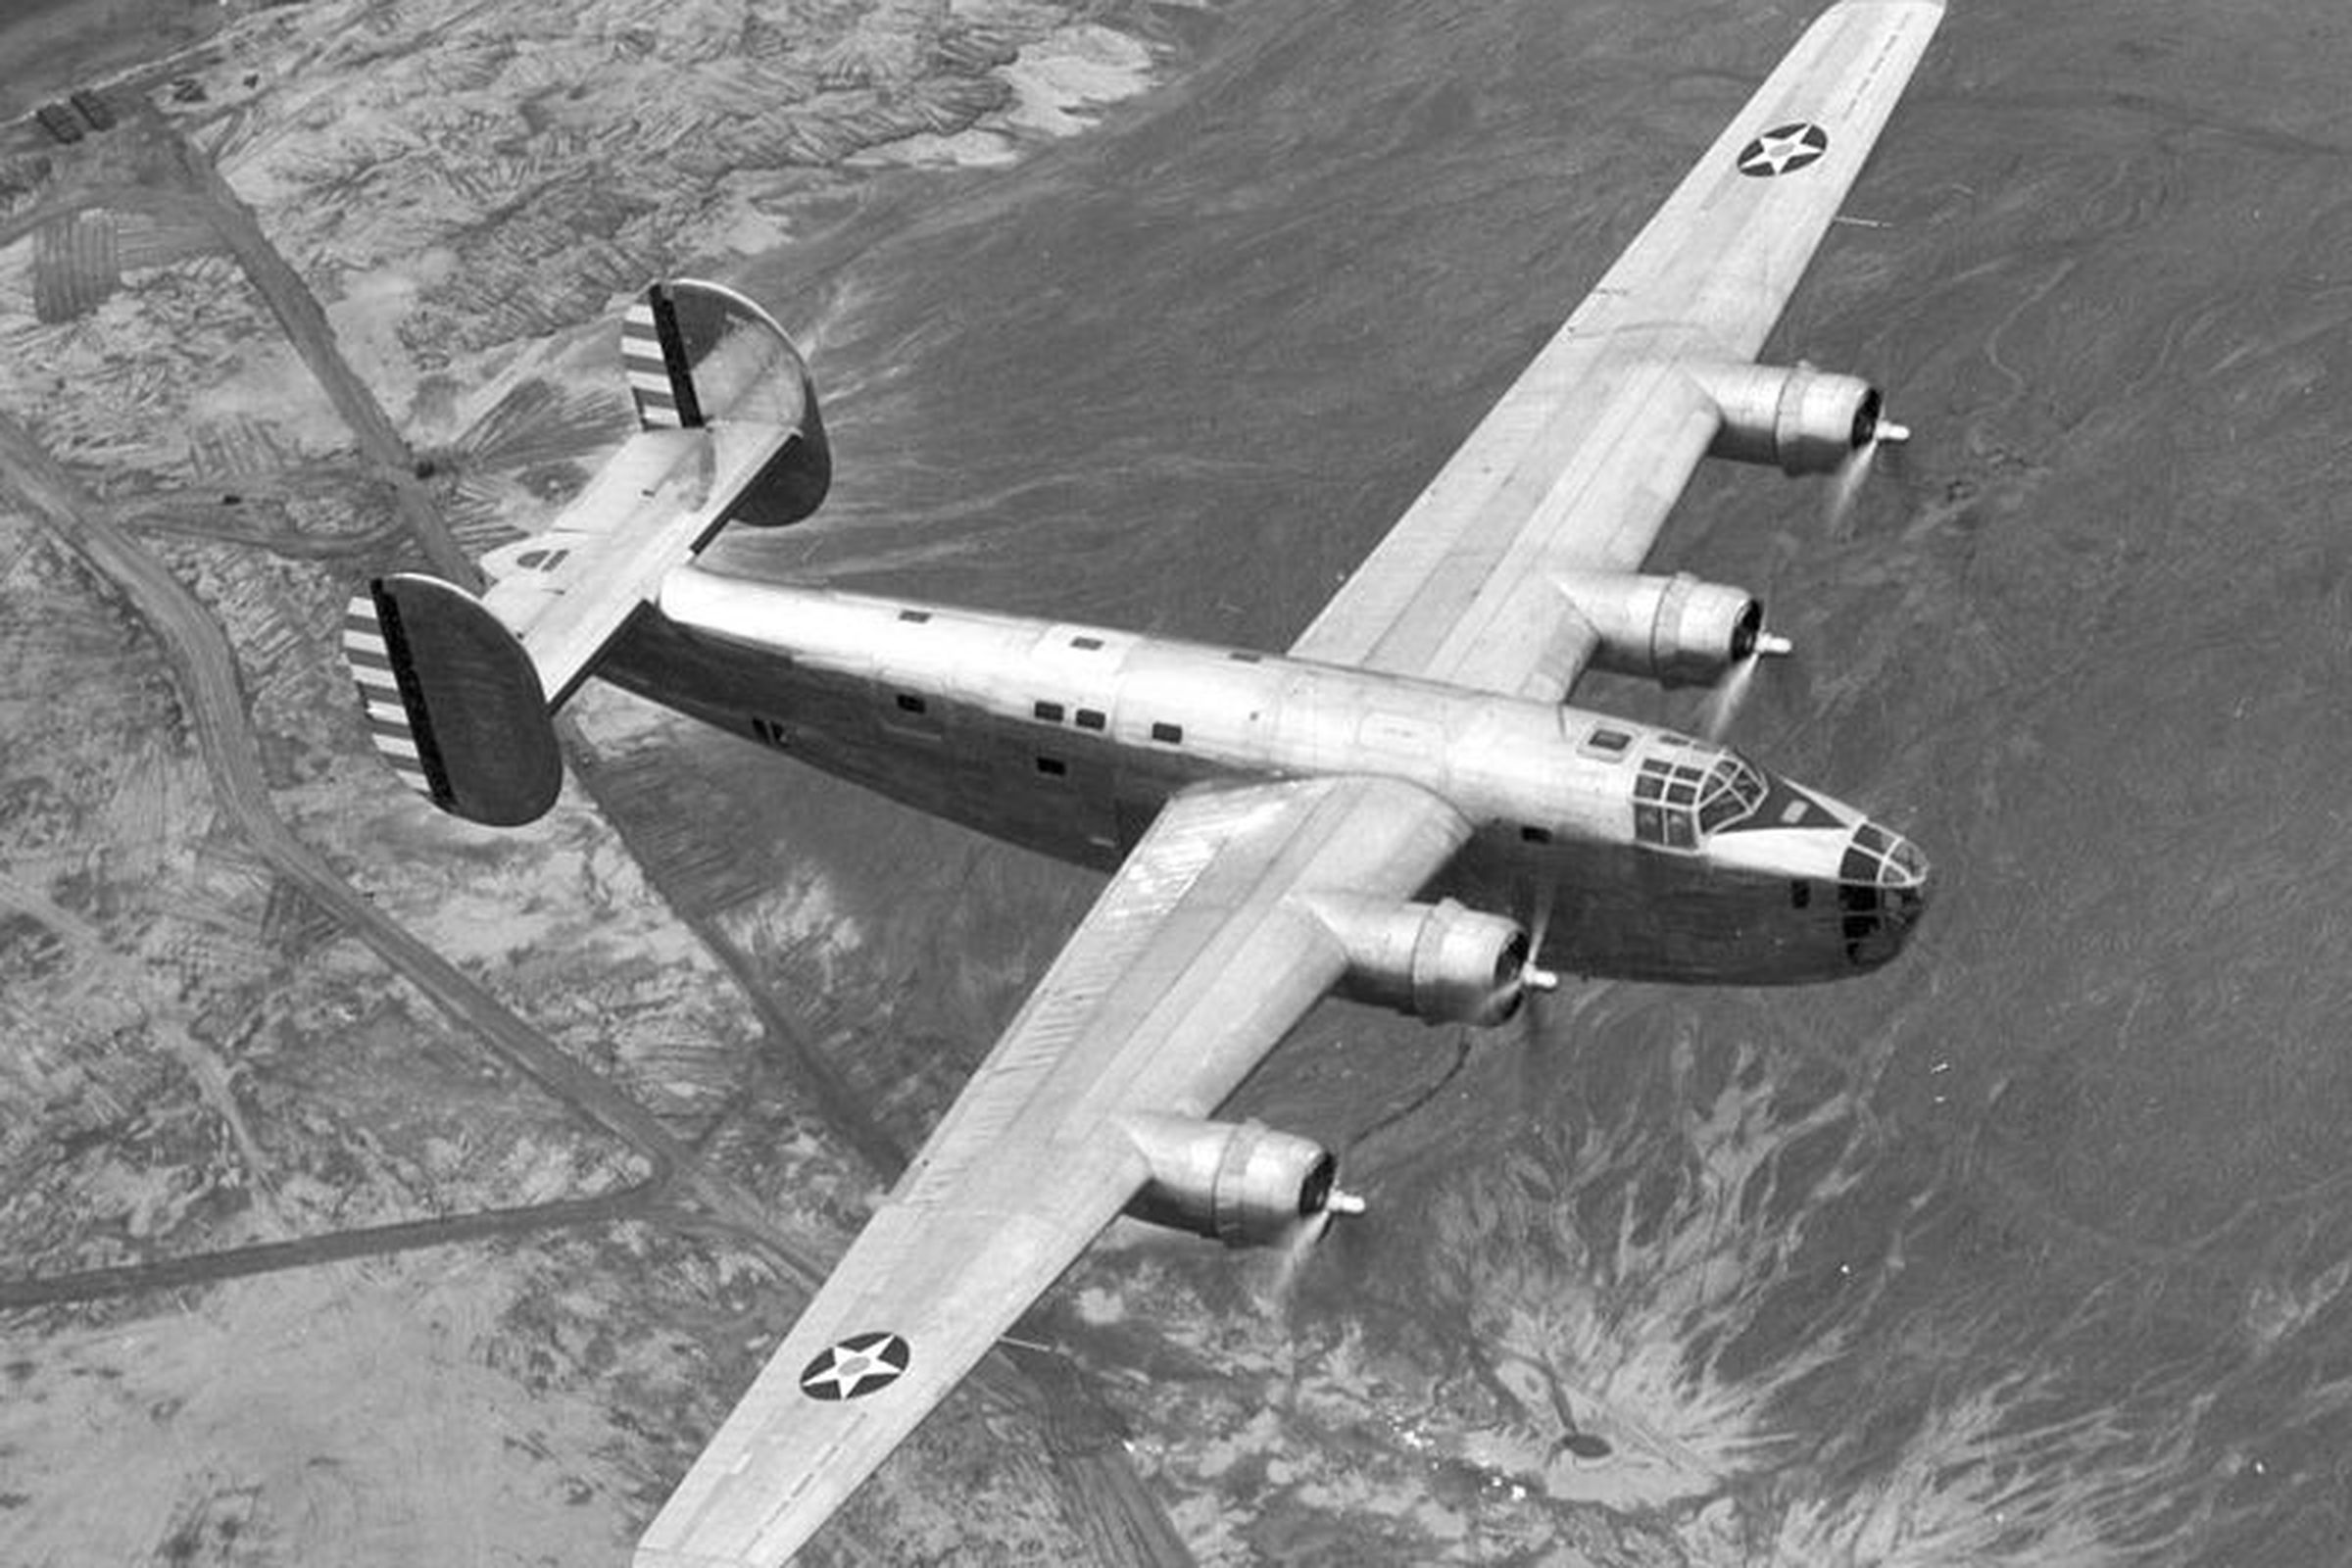 b-24 wwii bomber (wikimedia)